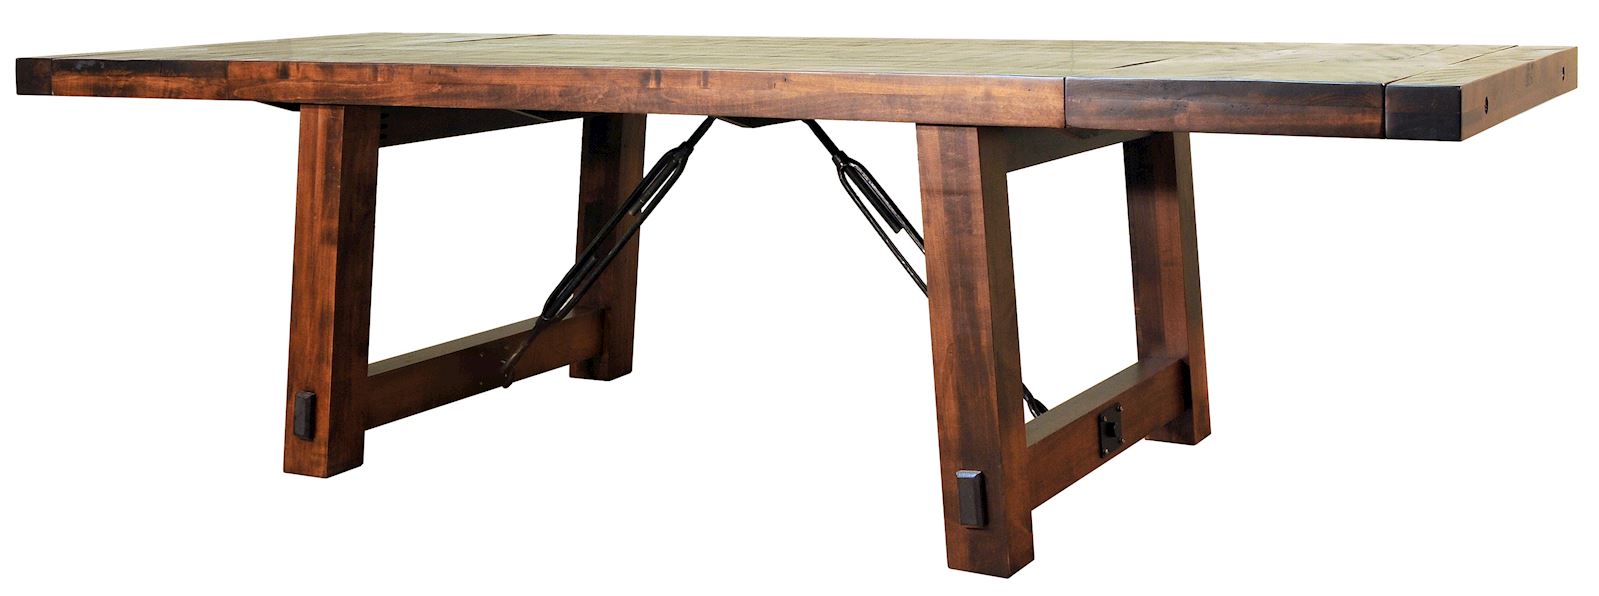 ruff-sawn-dining-table